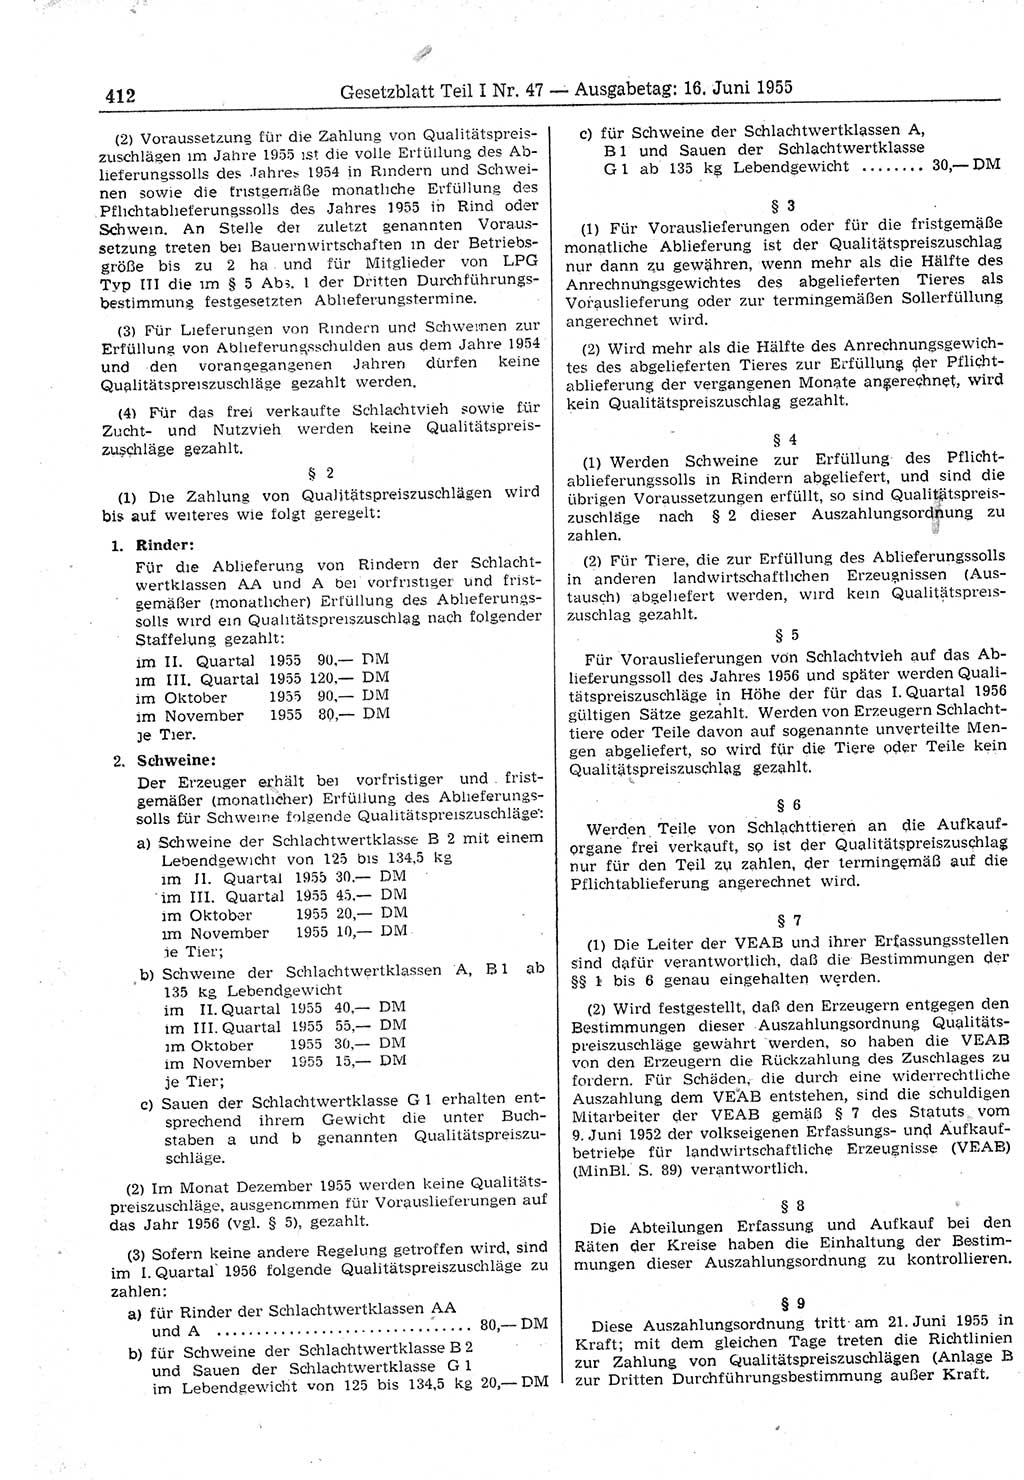 Gesetzblatt (GBl.) der Deutschen Demokratischen Republik (DDR) Teil Ⅰ 1955, Seite 412 (GBl. DDR Ⅰ 1955, S. 412)